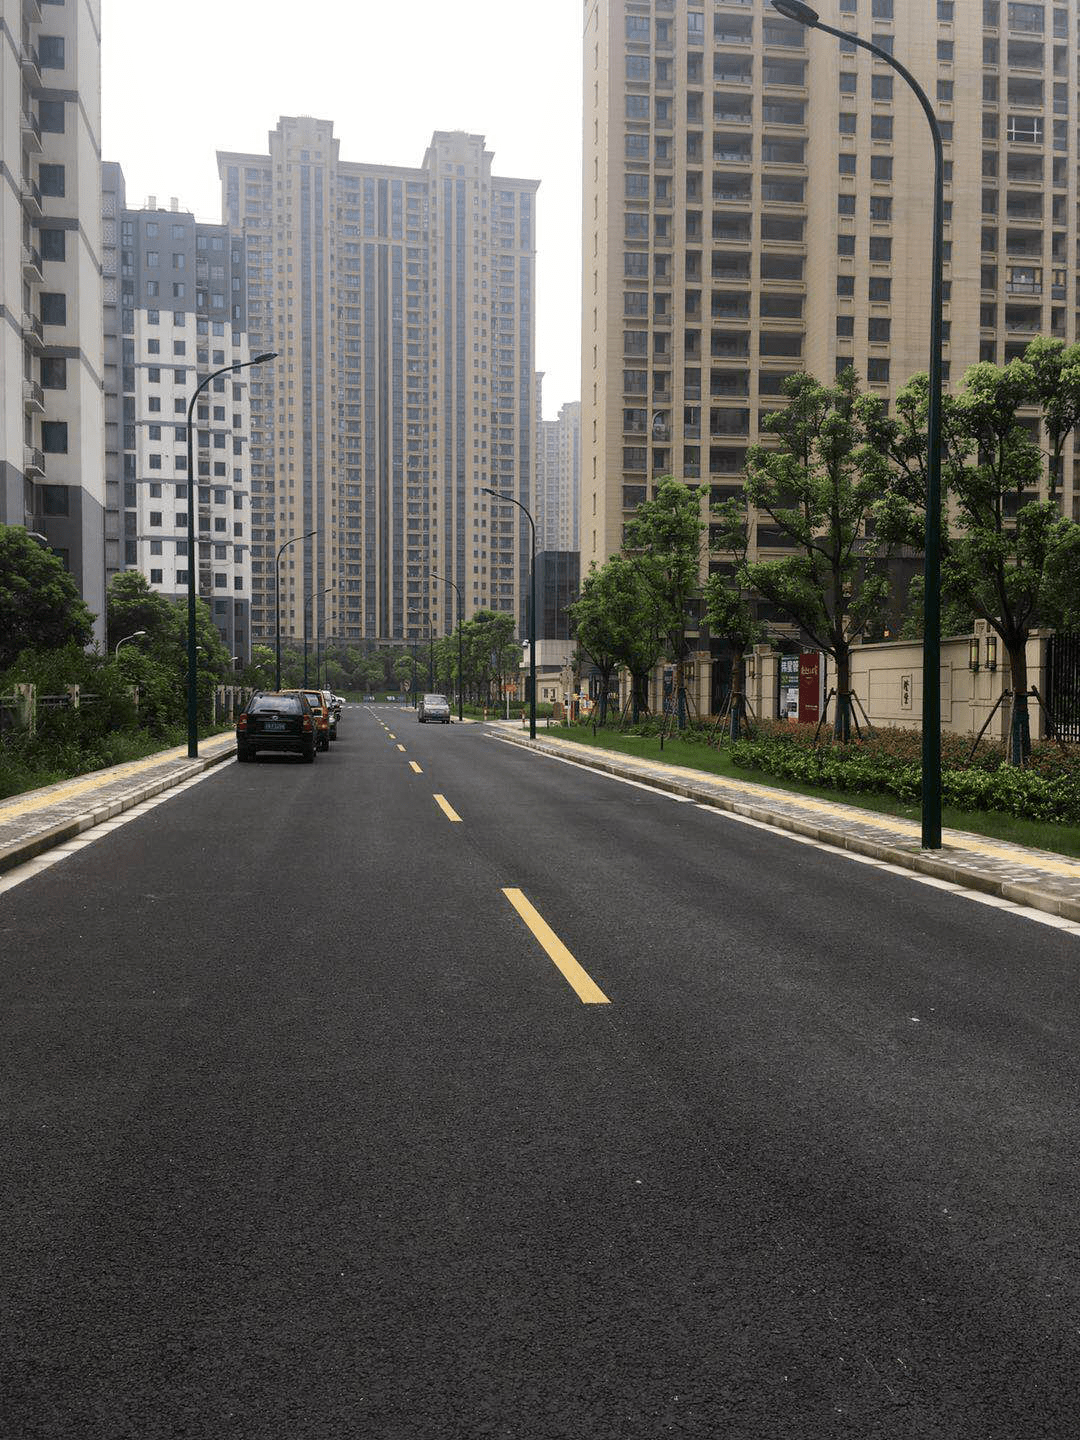 好消息!江阴城区2条路顺利通过竣工验收,已开放通车